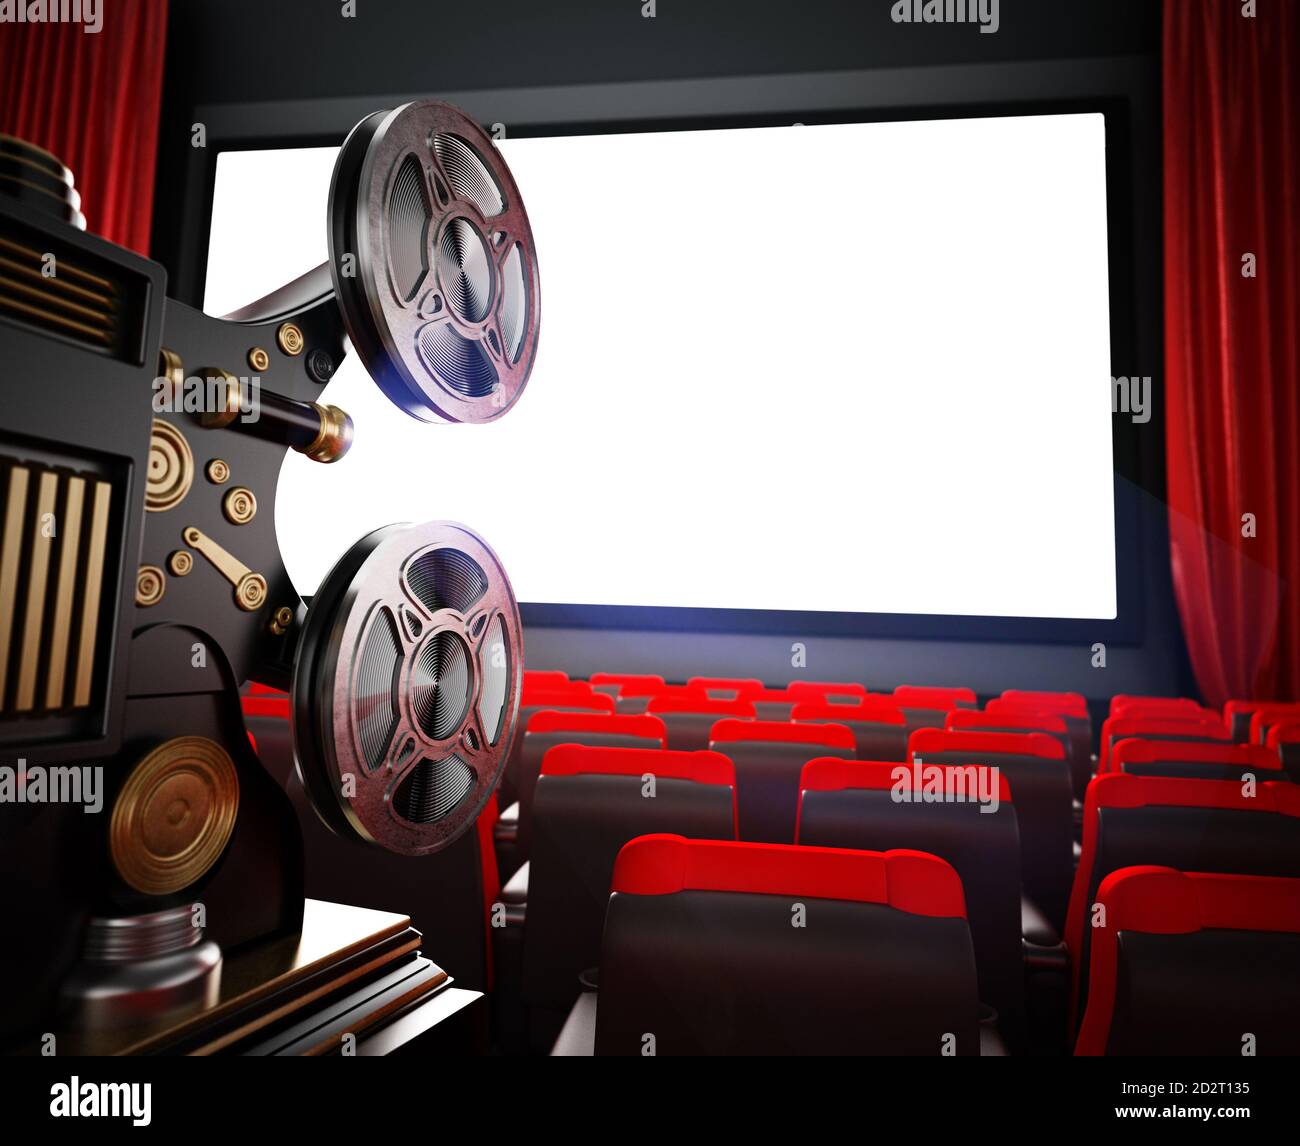 Proiettore cinematografico d'epoca nel cinema. Illustrazione 3D. Foto Stock